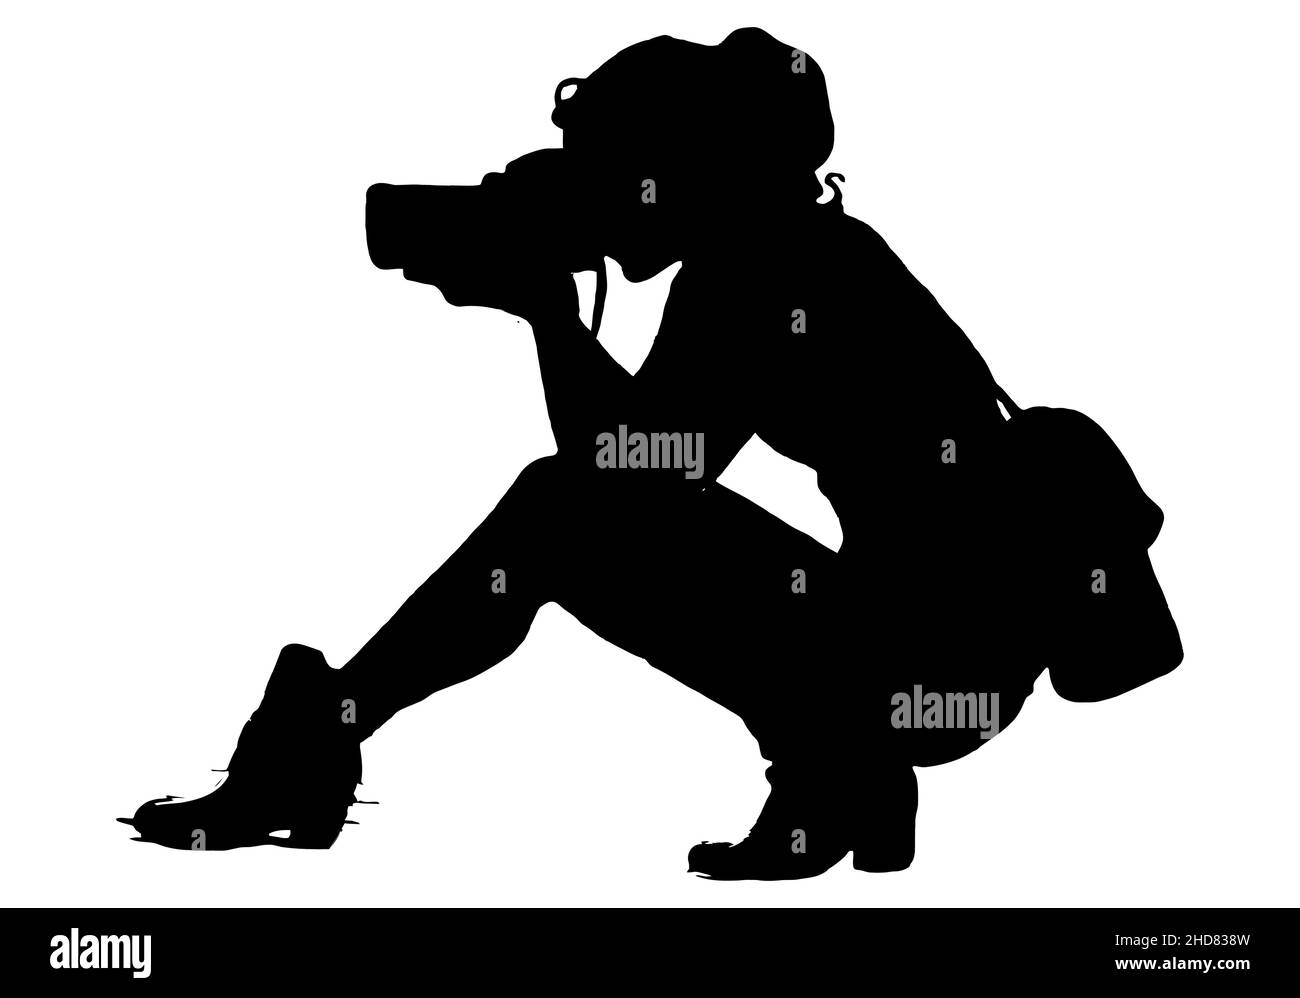 Schwarze Silhouetten einer Dame oder Fotografin, Mädchen, das Fotos macht, während sie sich hinsetzt, professionell Stock Vektor